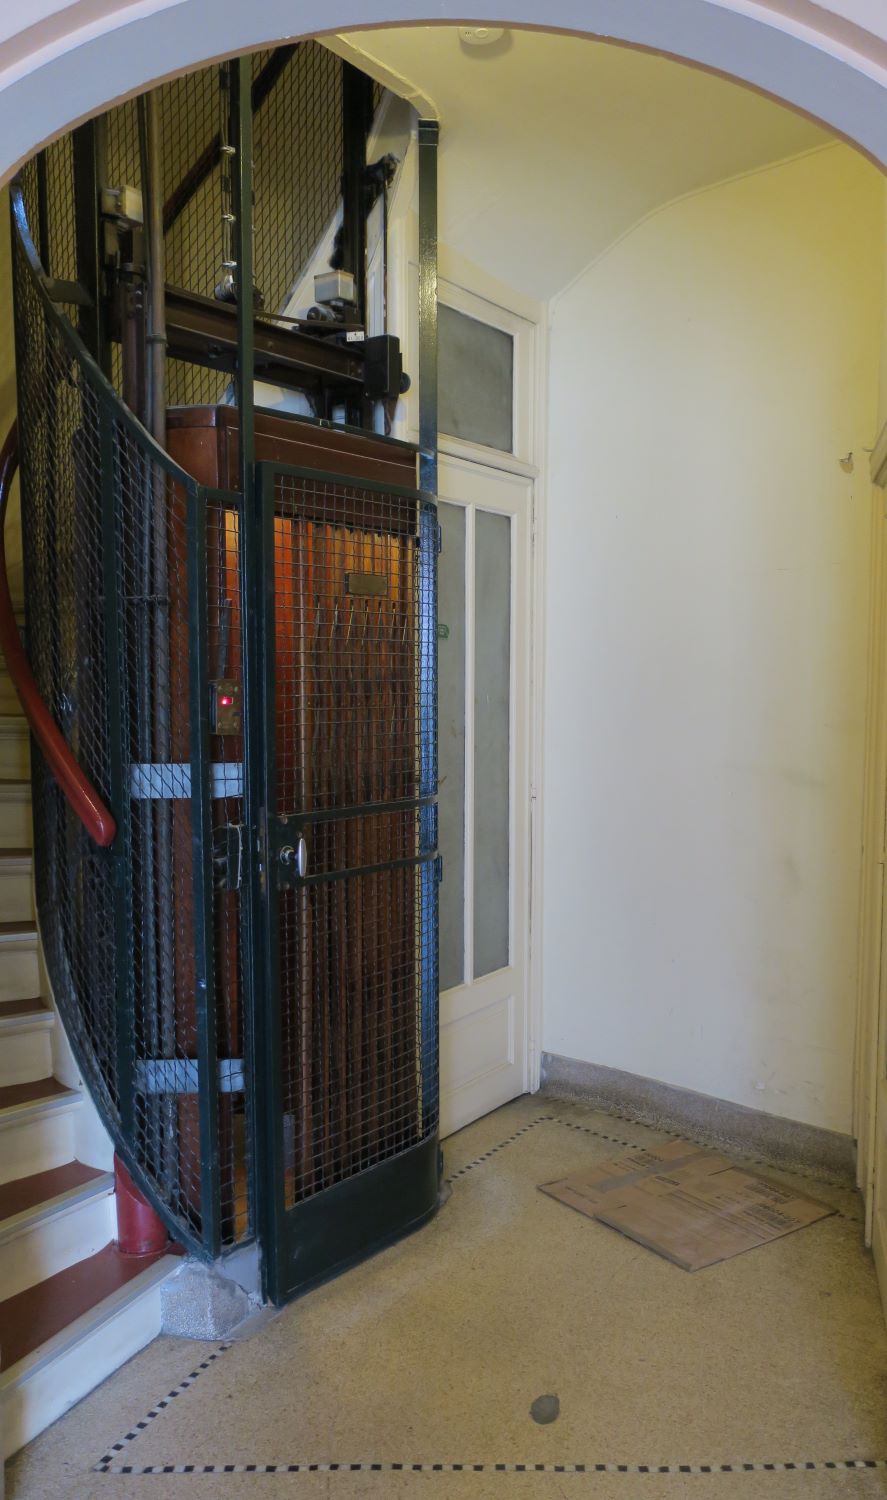 Avenue Huart Hamoir 50. Ascenseur au rez-de-chaussée  © Homegrade , 2022